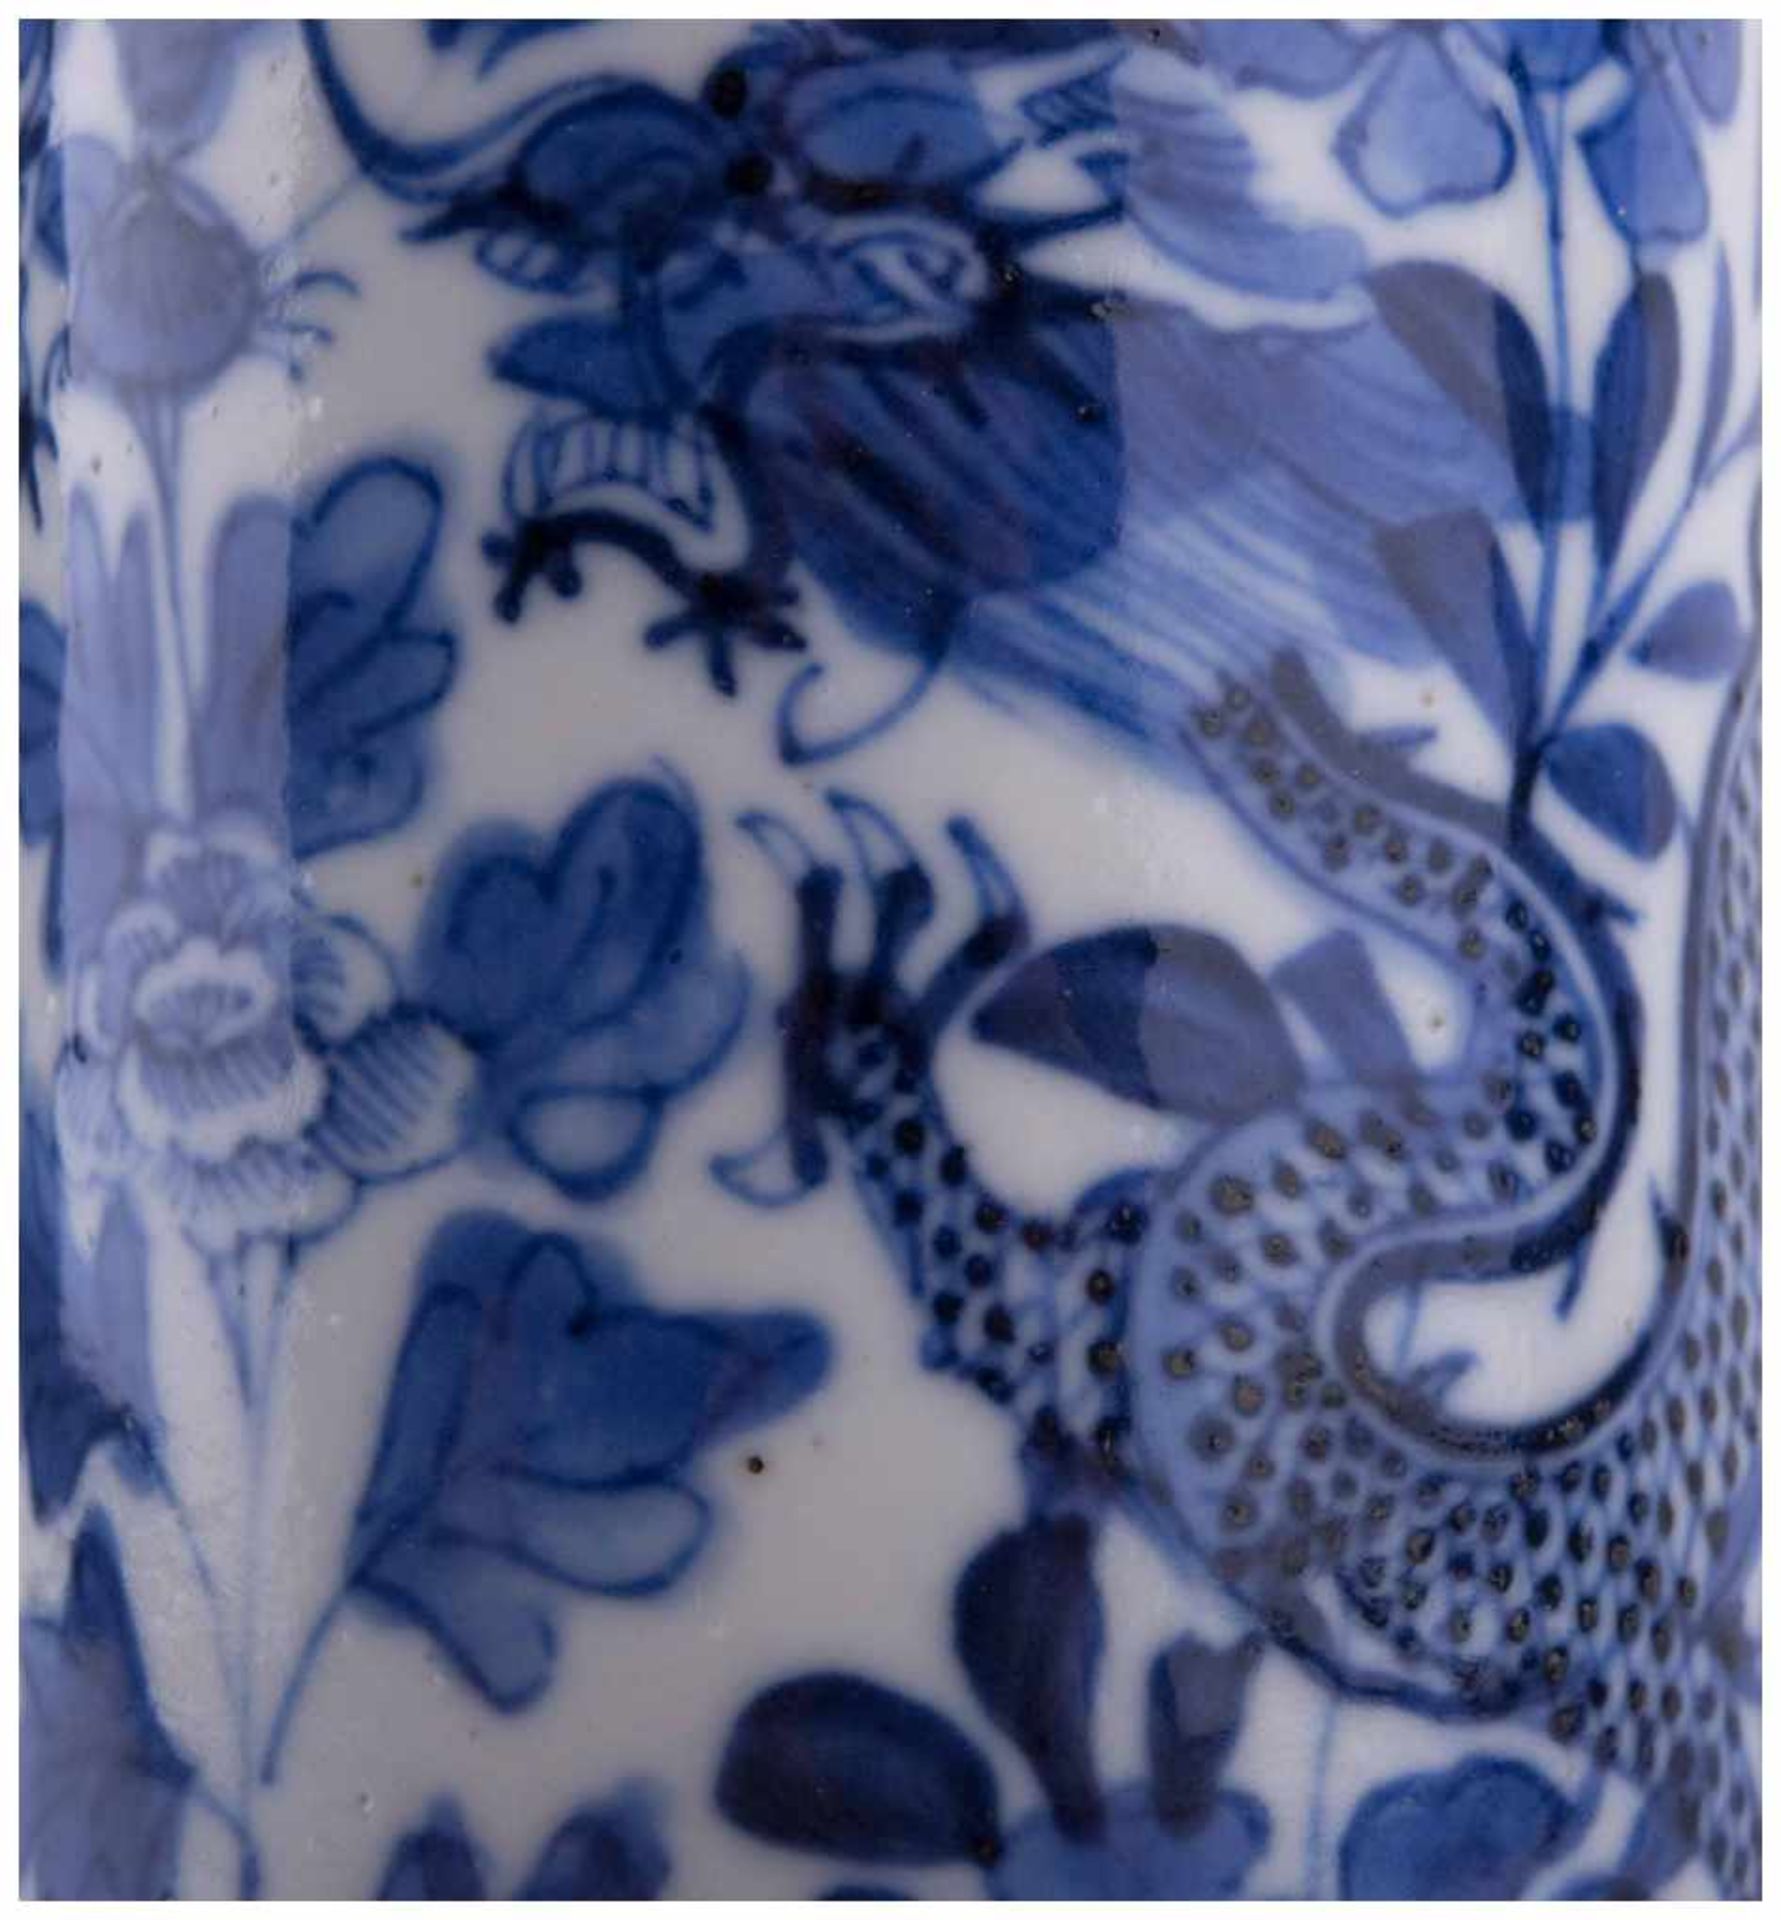 Stangenvase China 19./20. Jhd. / Vase, China 19th/20th century - Blau-weiß Malerei [...] - Bild 8 aus 10